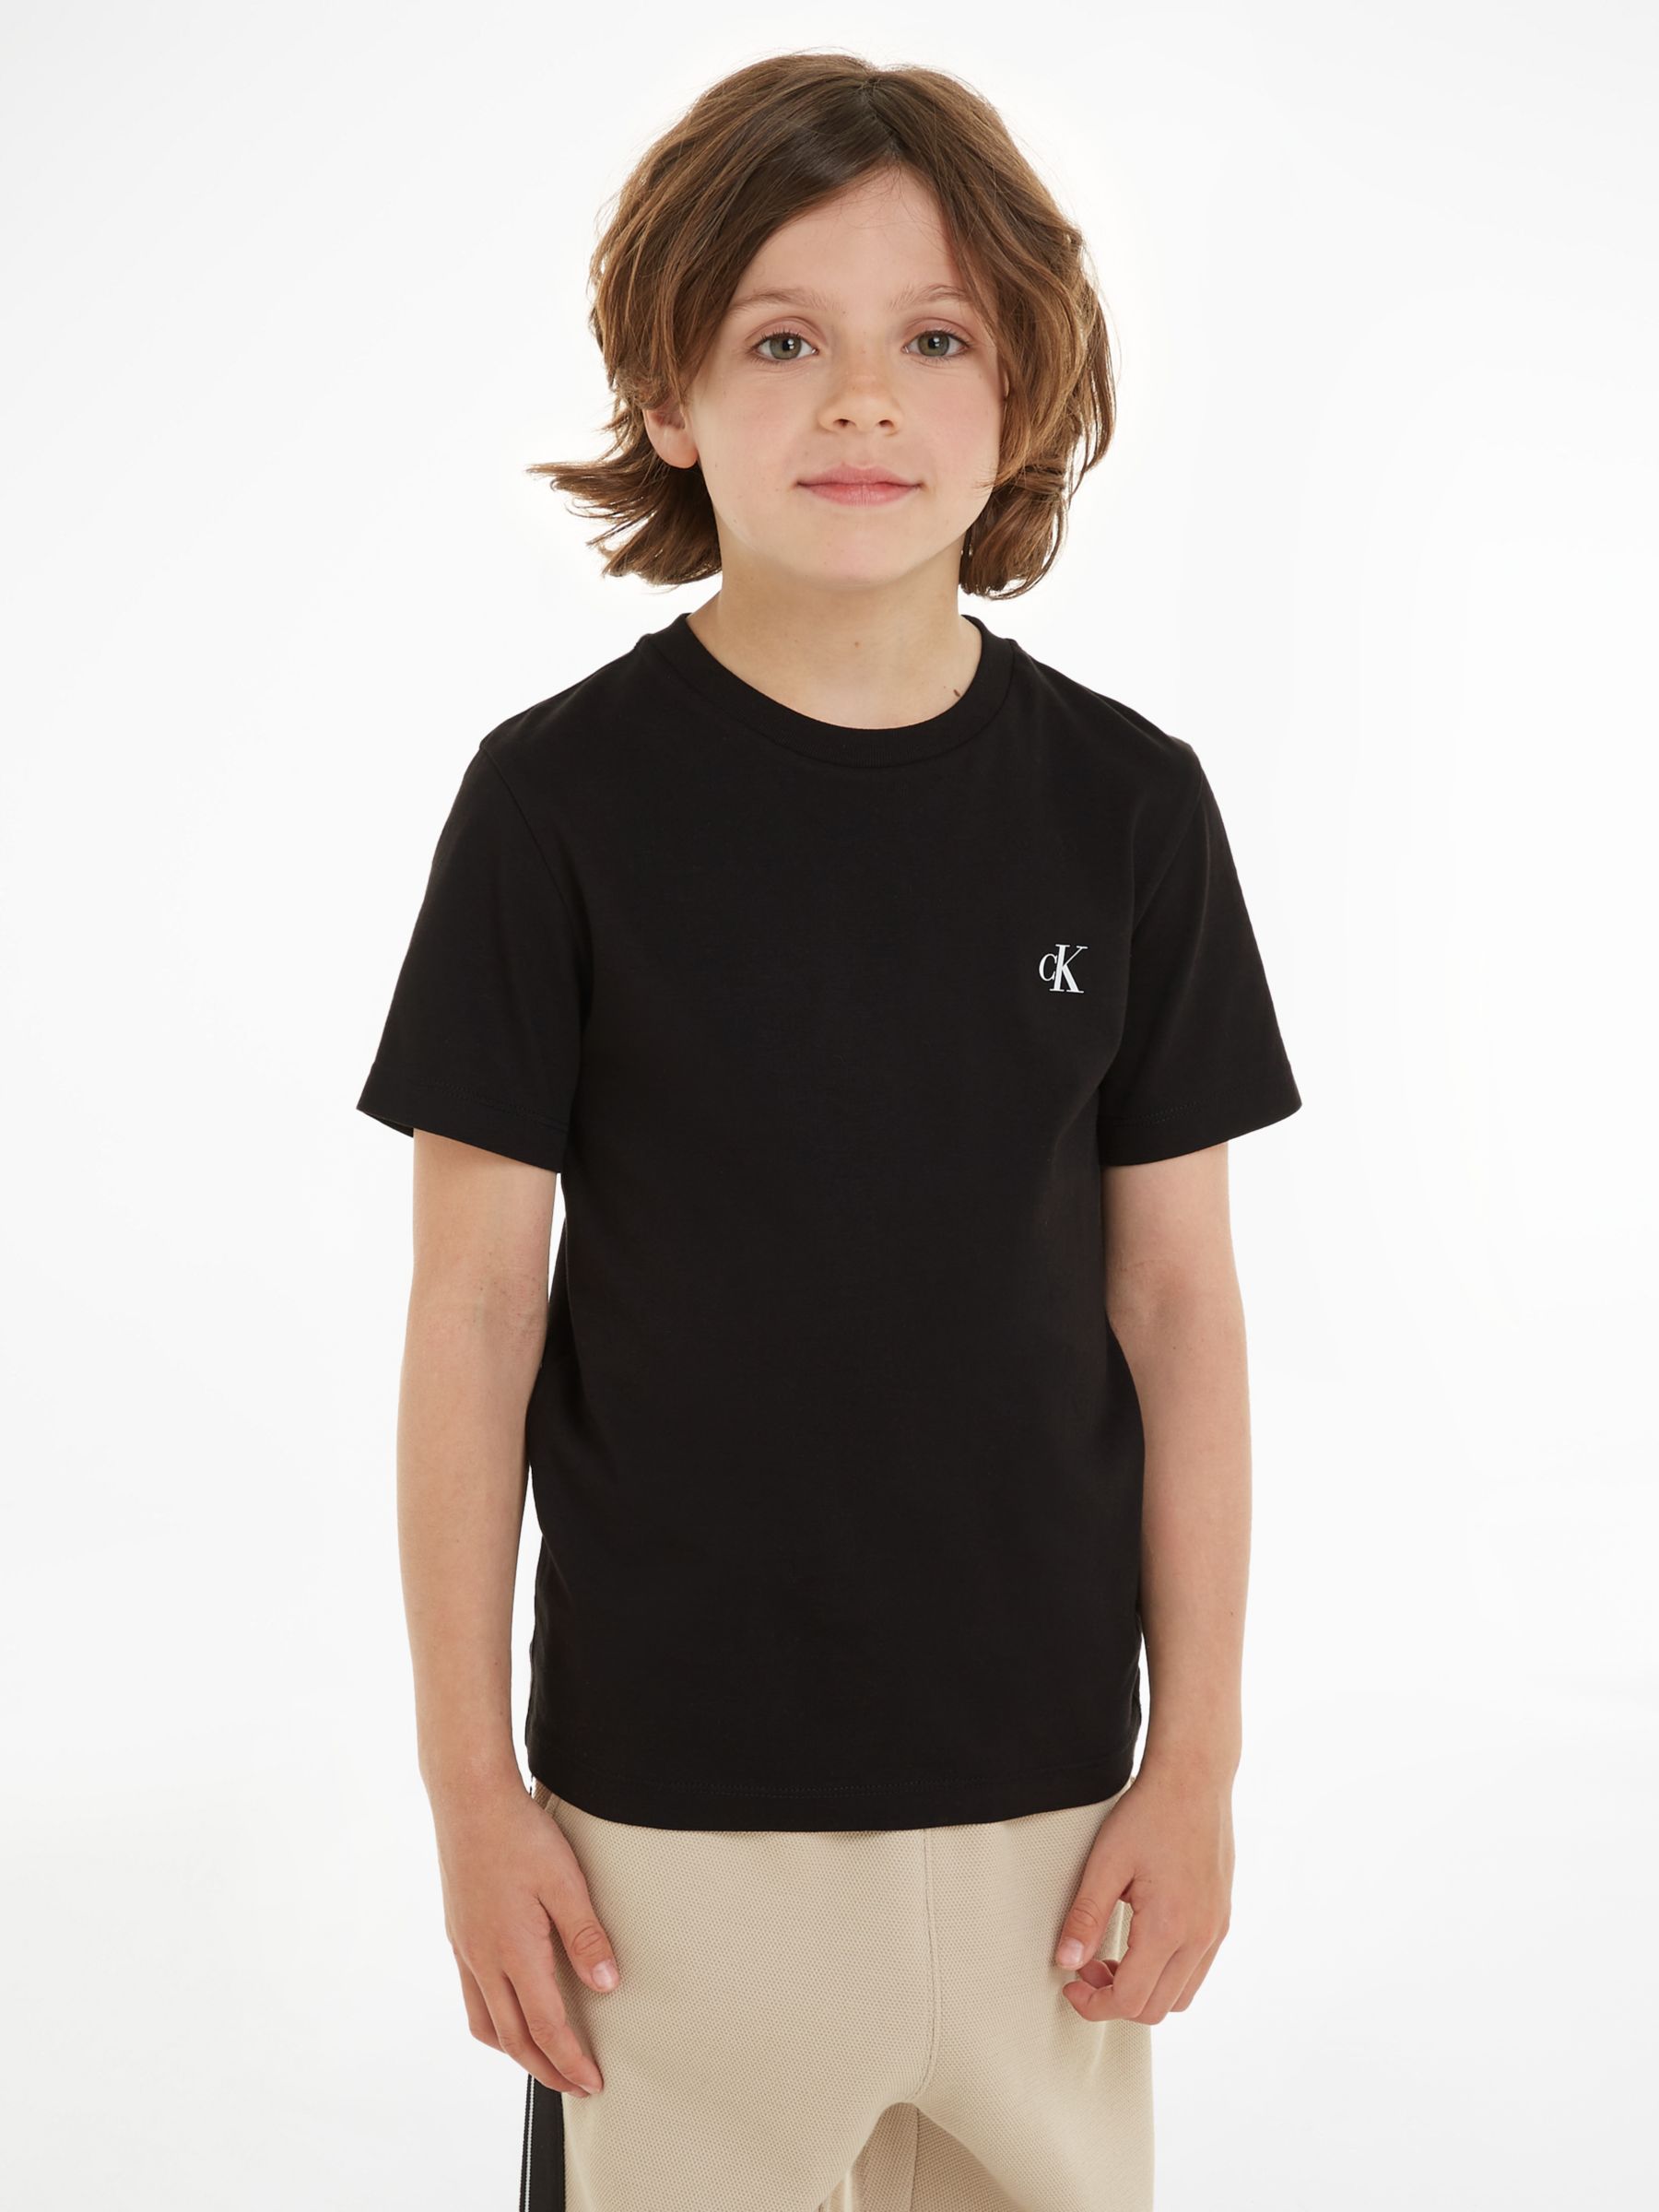 Monogram Klein Partners John Cotton Sleeve Kids\' T-Shirts, Short at Black Calvin Pack Lewis Keepsake & of 2, Blue/Ck